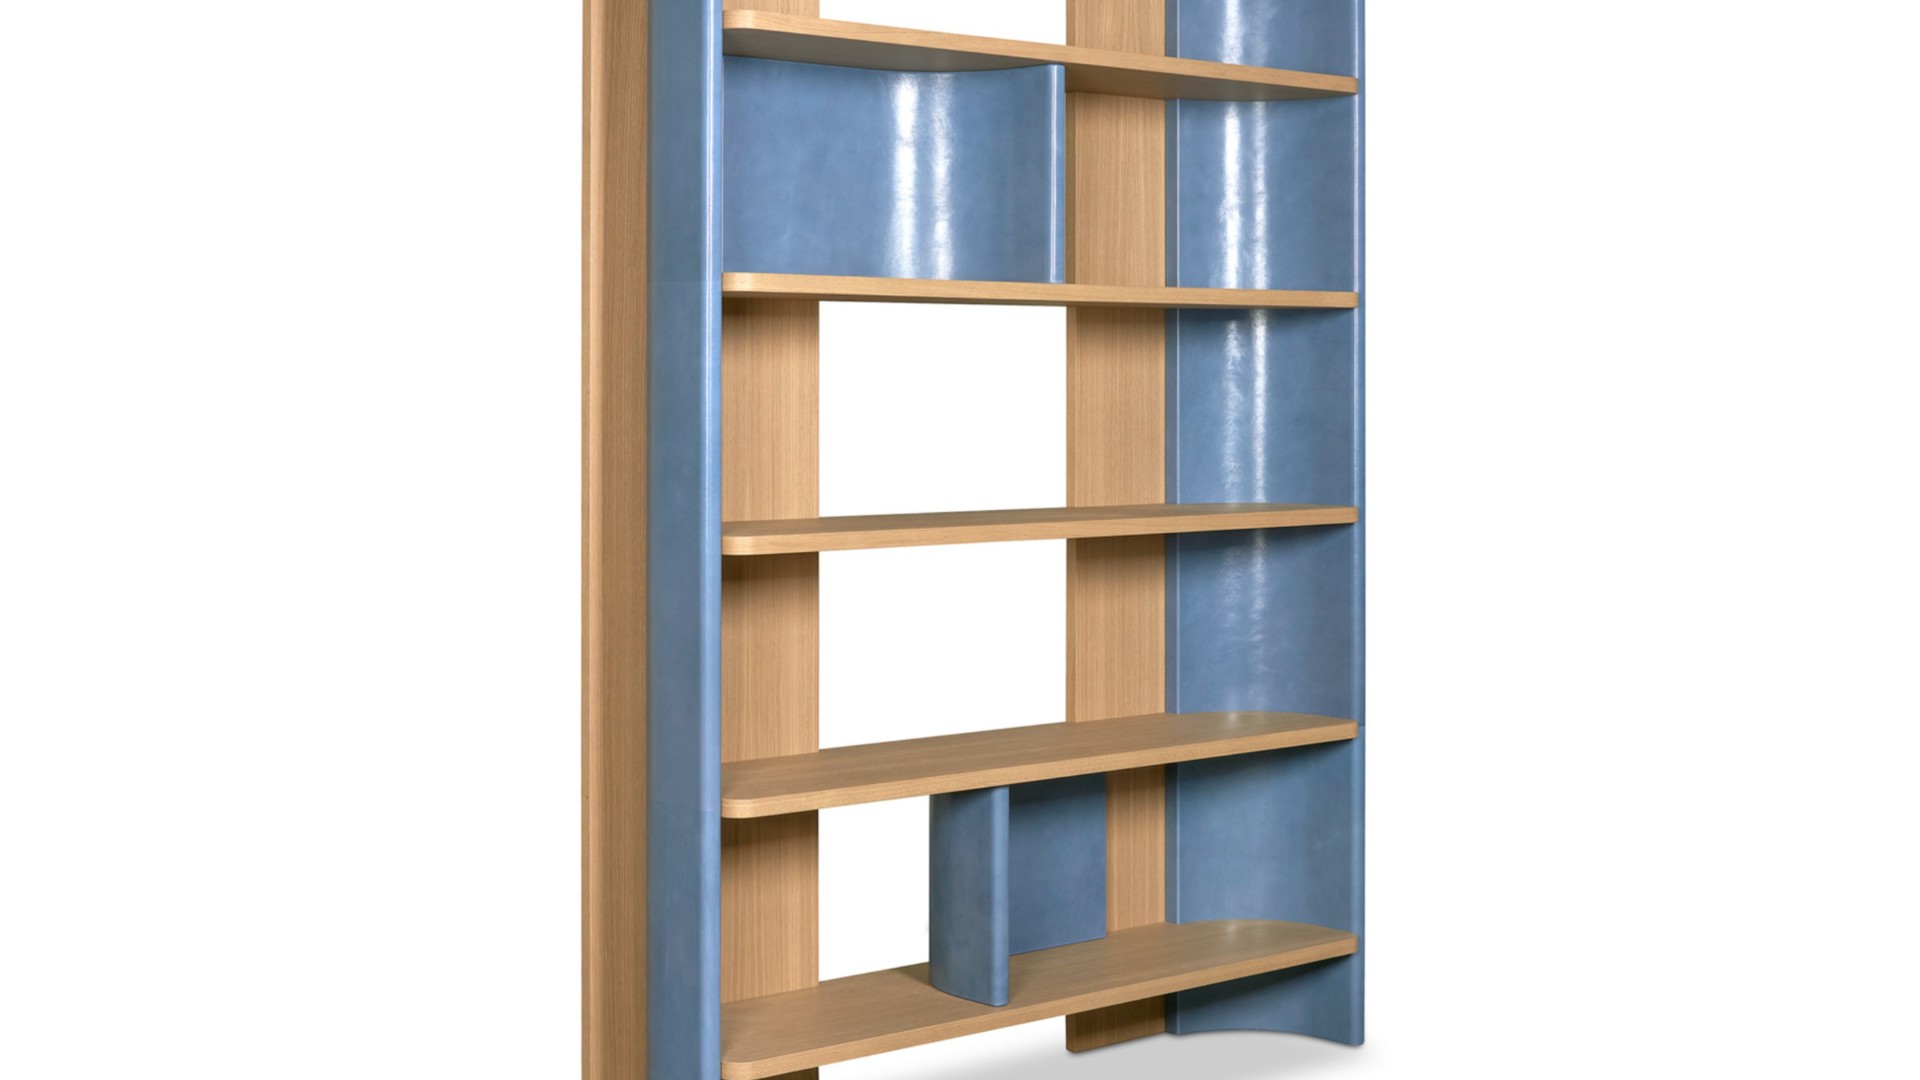 Baxter Joni Libreria boekenkast hoge kast bookcase HORA Barneveld 4.jpg